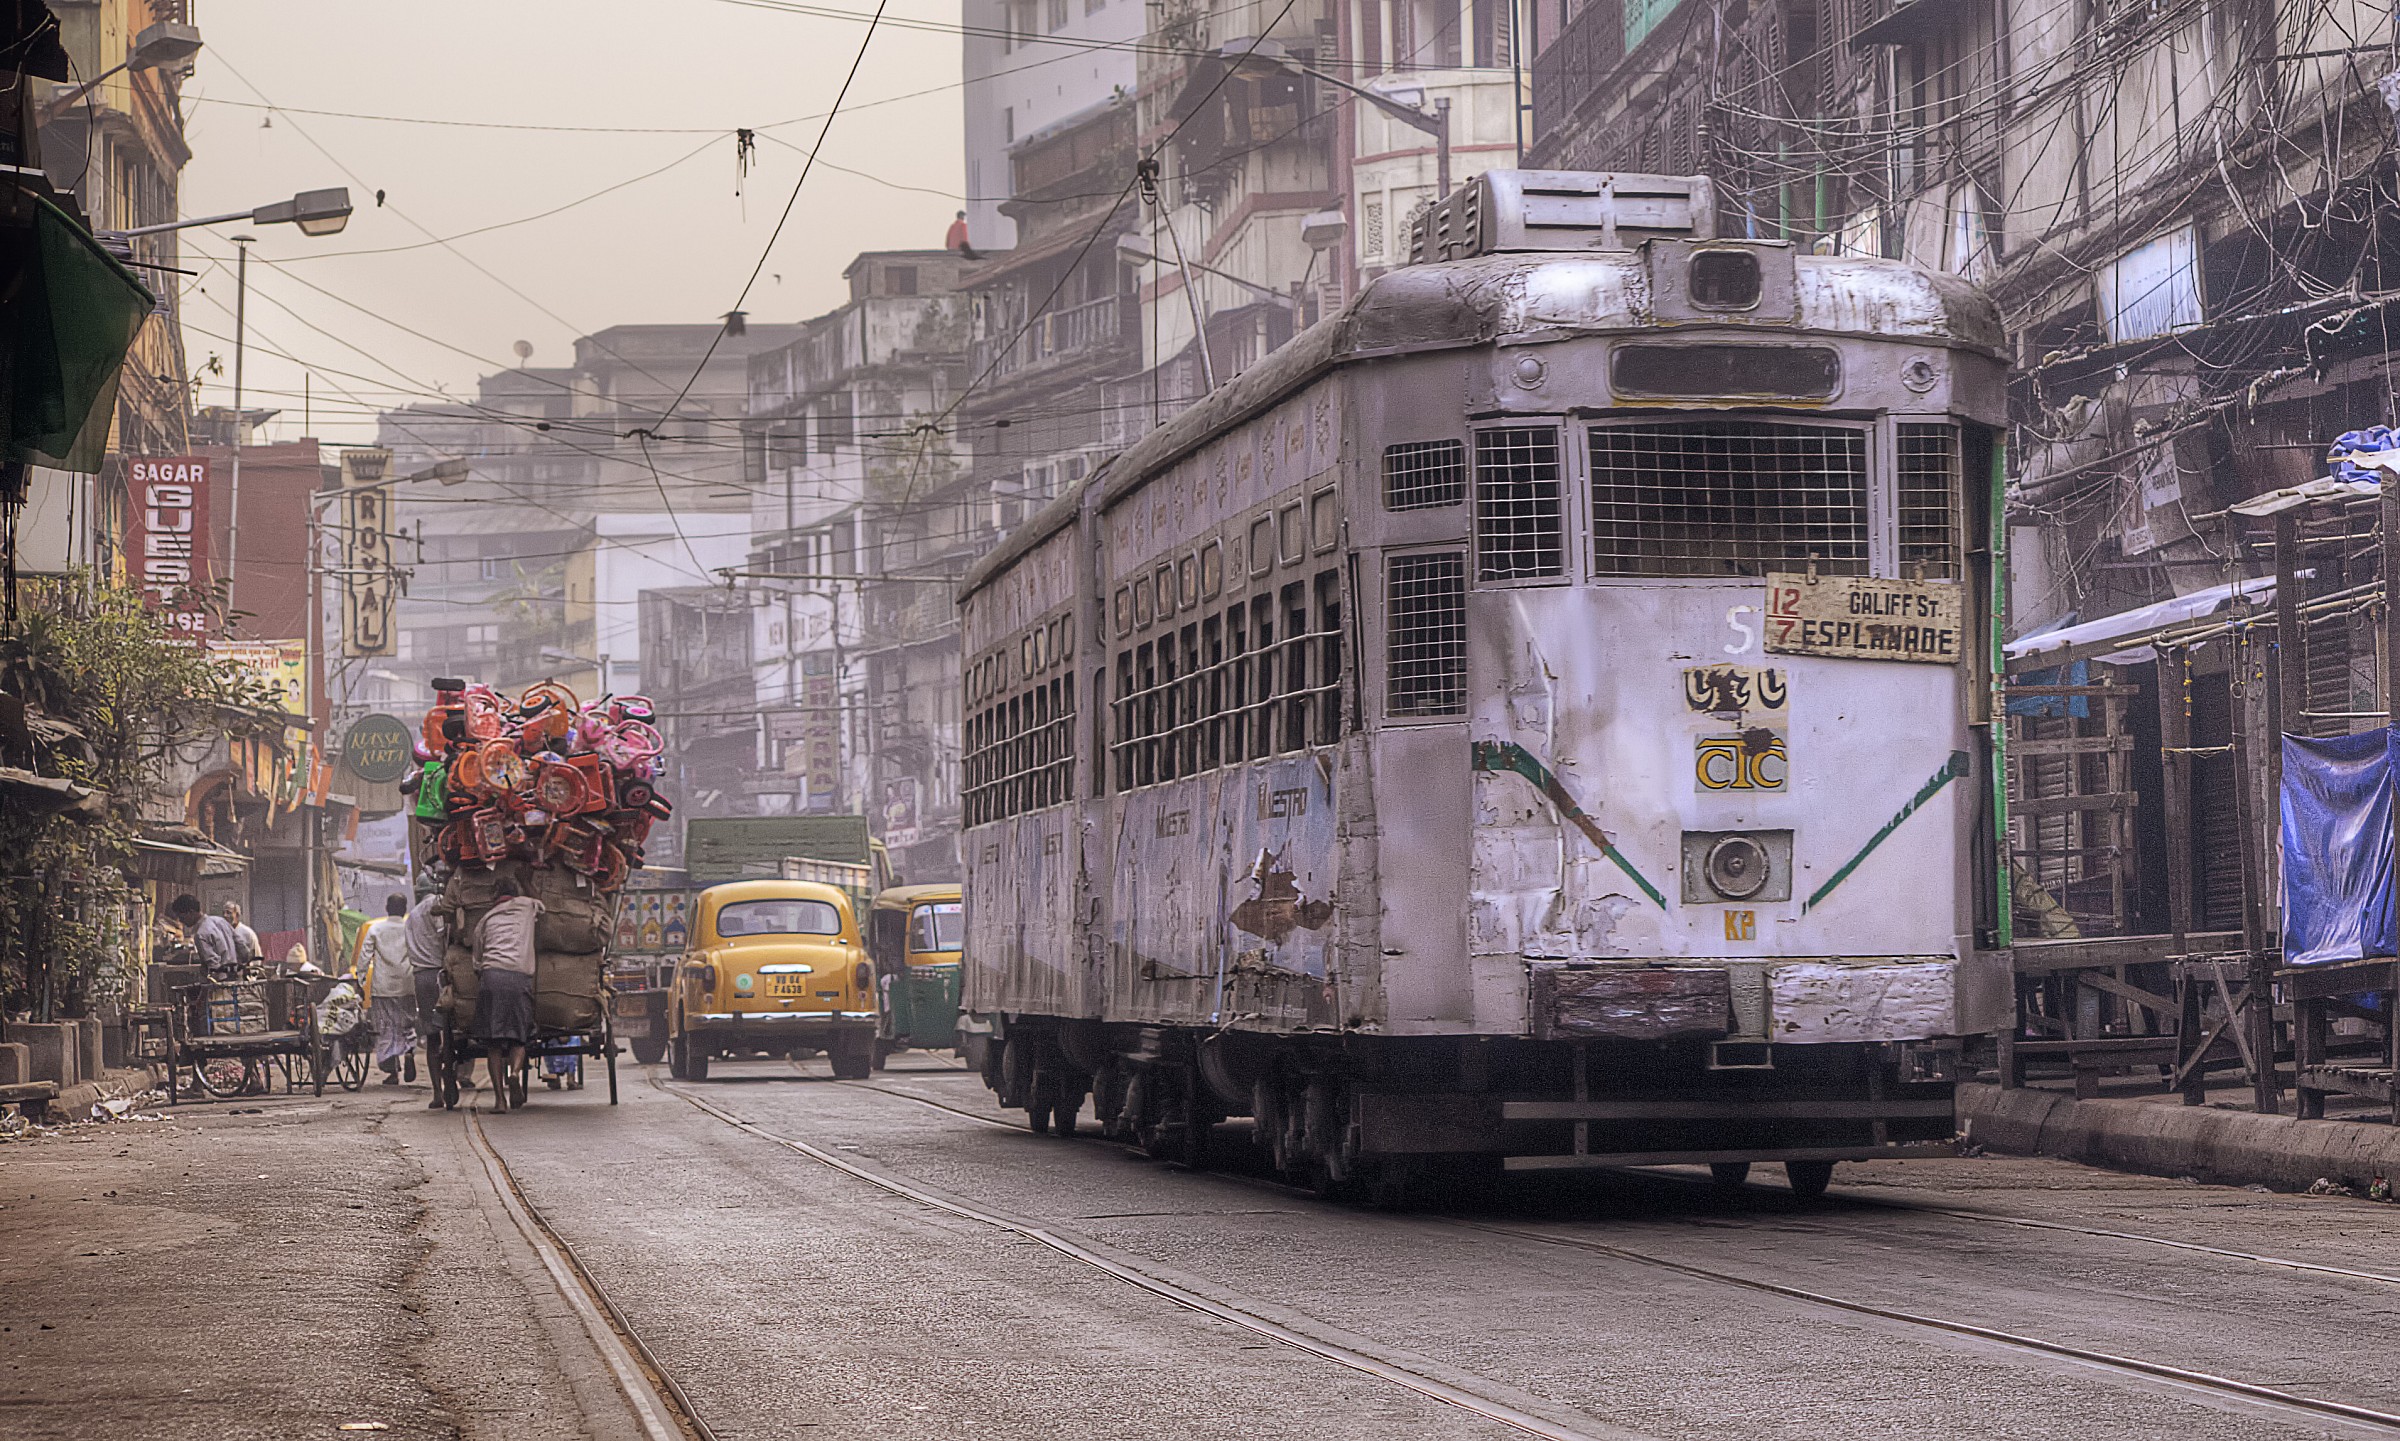 Tram - Morning in Kolkata...